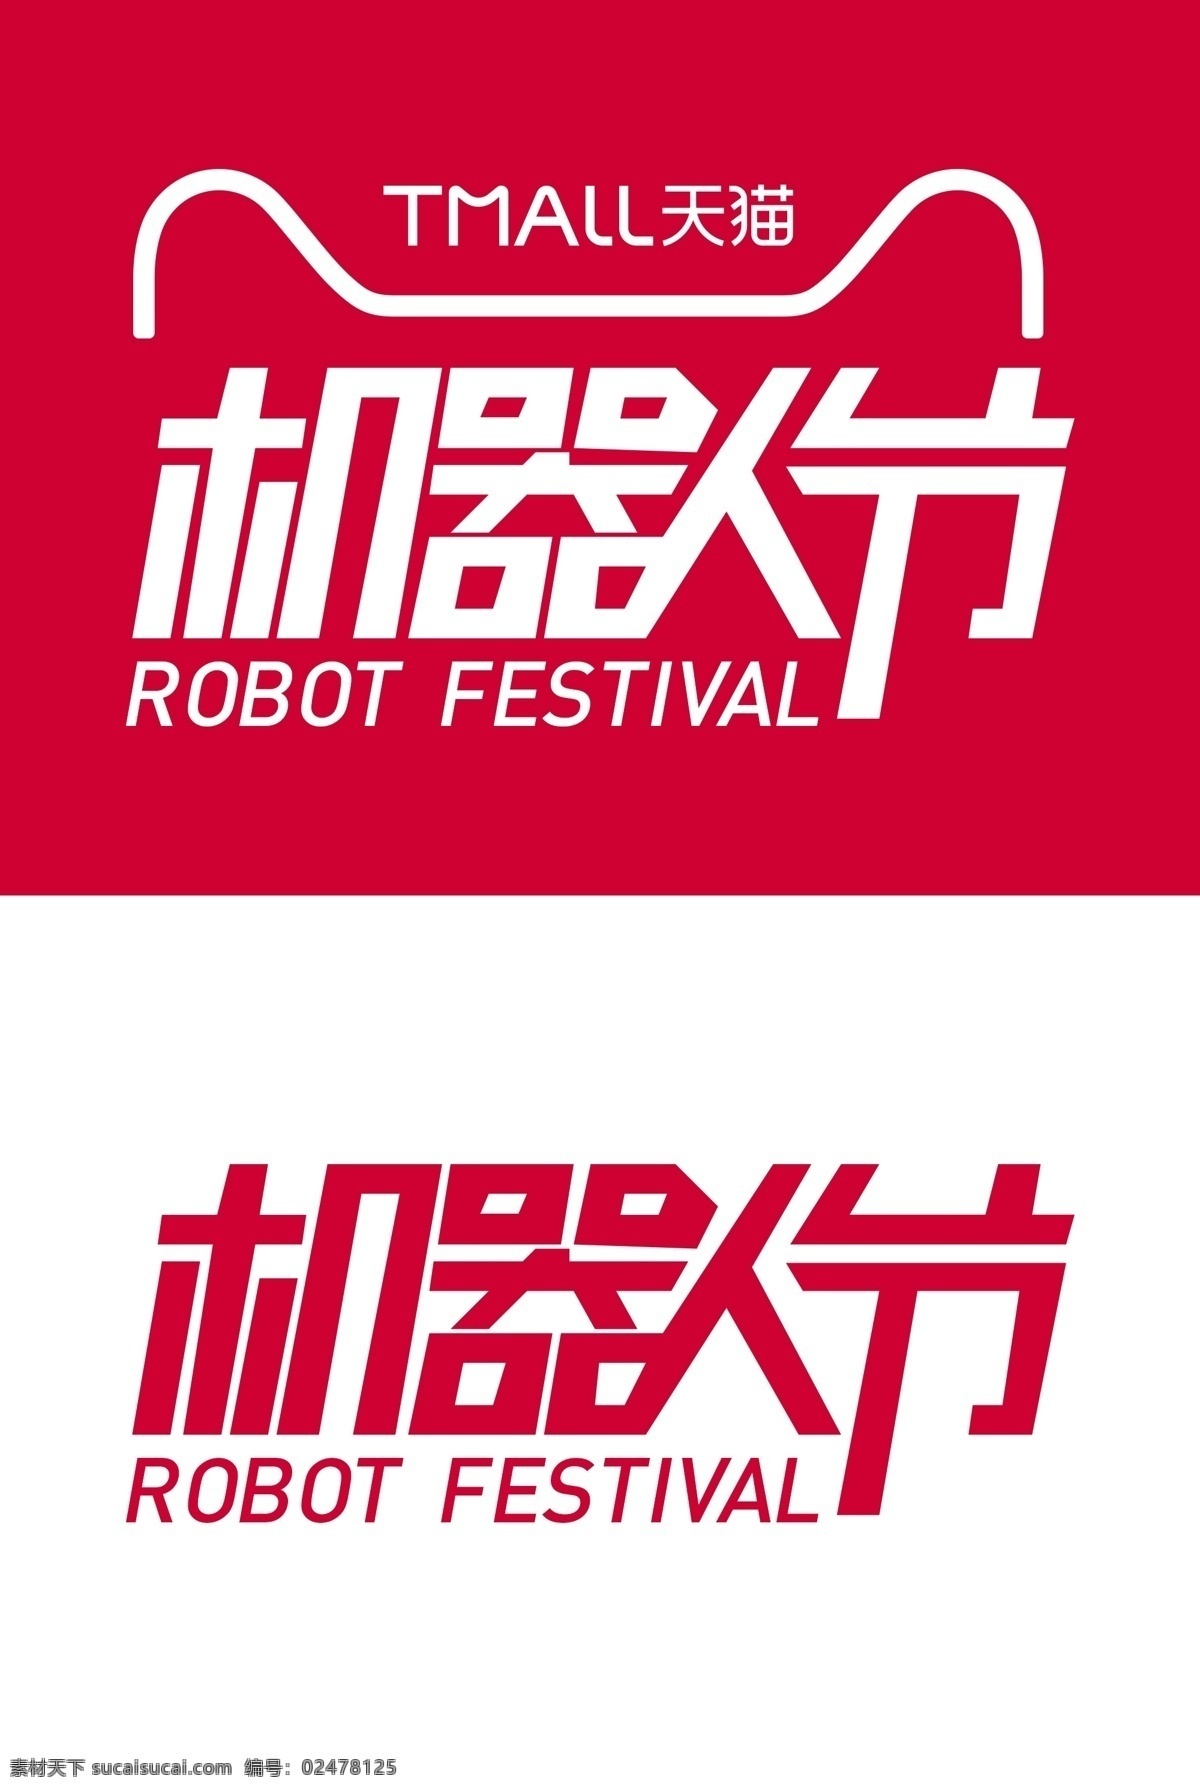 天猫 机器人 节 矢量 logo psd大文件 机器人节 矢量logo 天猫机器人节